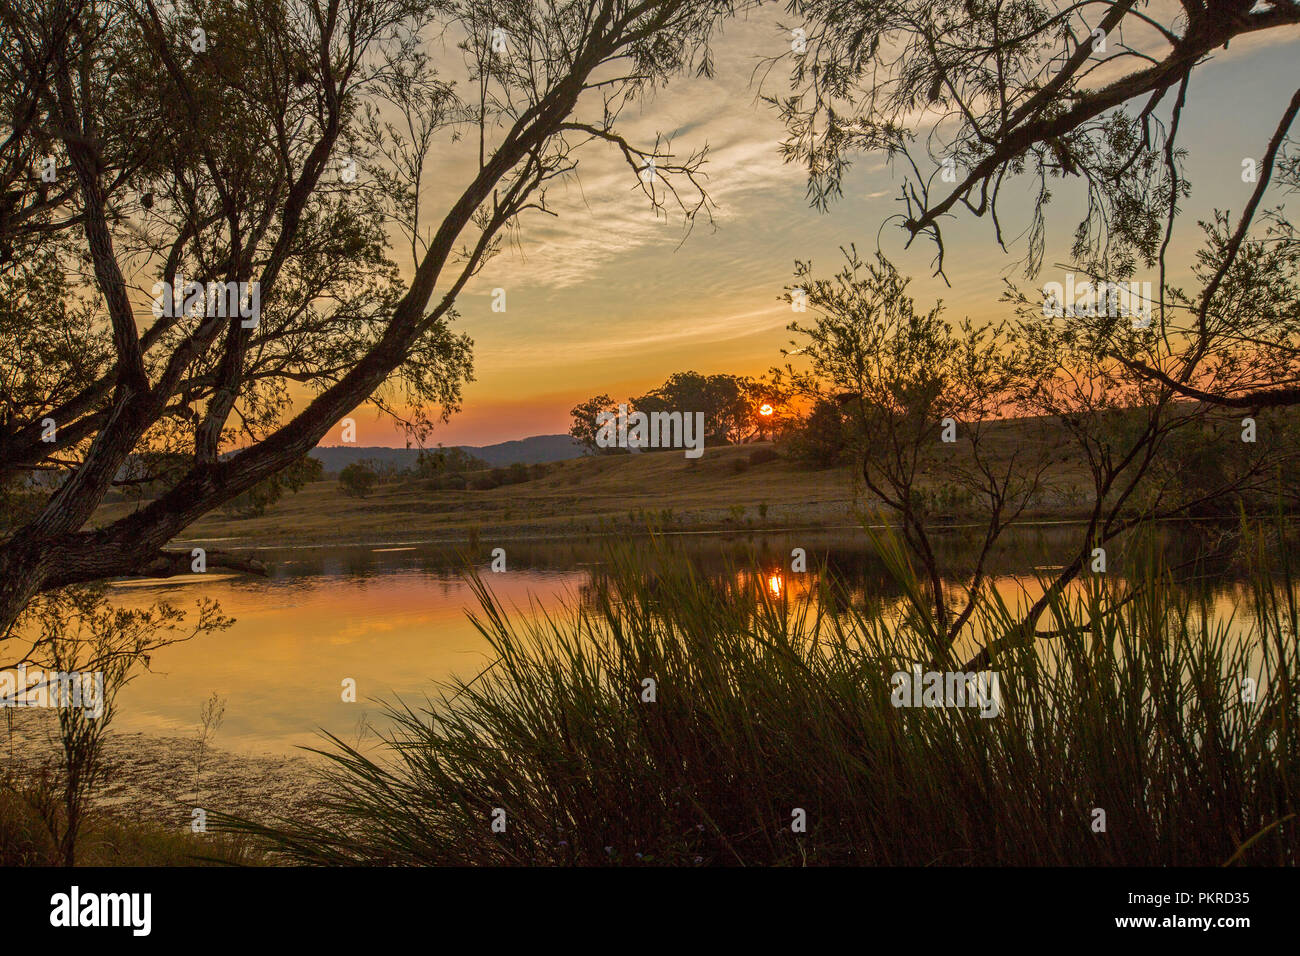 Orange ciel coloré avec sun rising over et se reflètent dans les eaux calmes de la rivière Clarence à l'aube à Lilydale en NSW Australie Banque D'Images